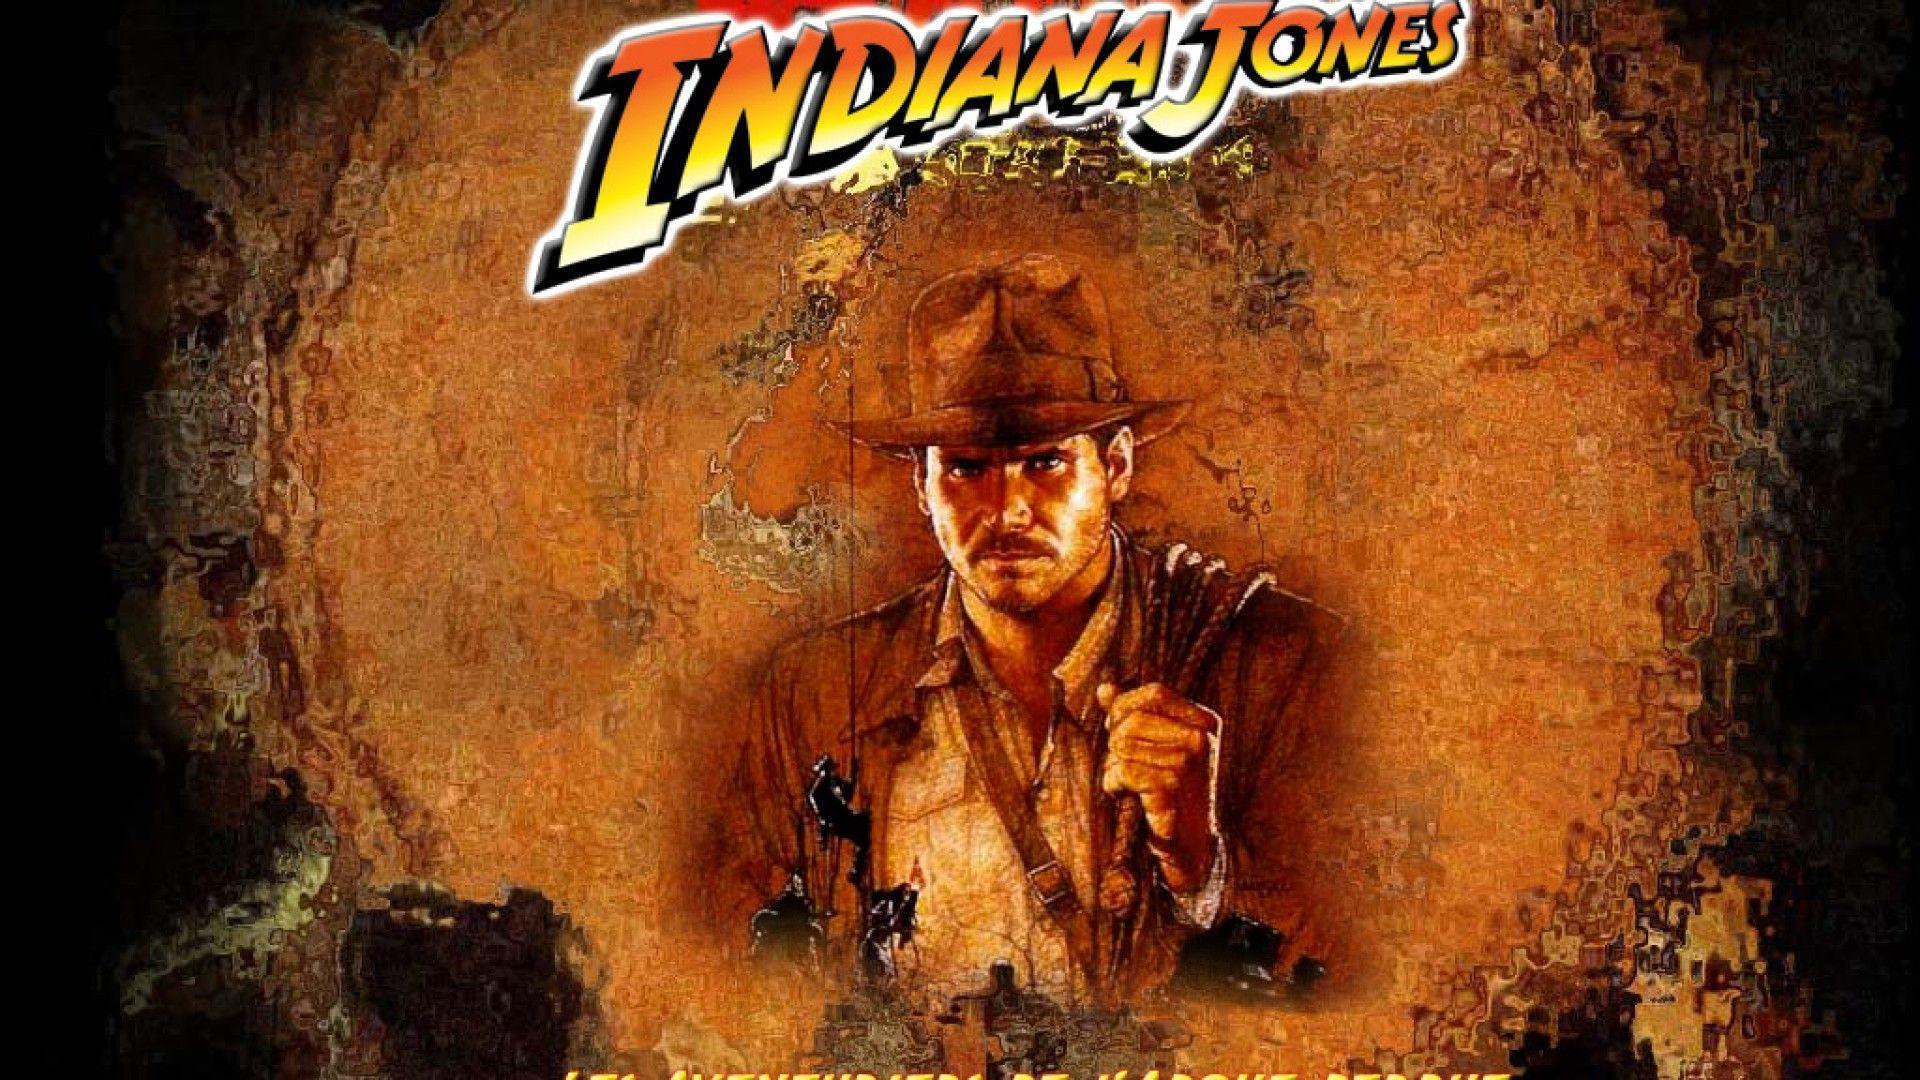 Indiana Jones p wallpapers hd